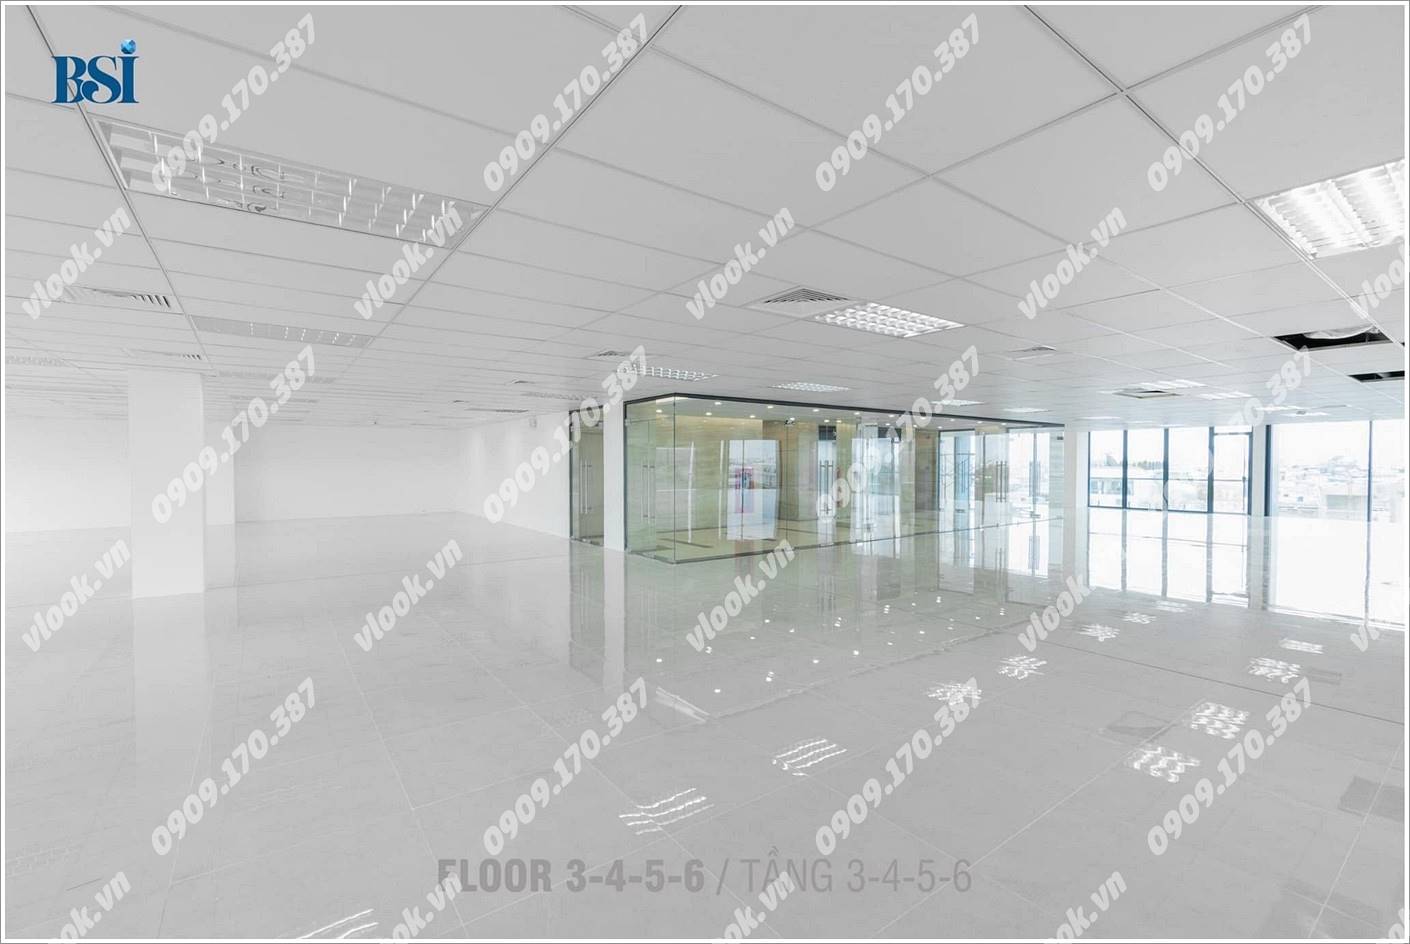 Sàn trống văn phòng cho thuê tại BSI Tower, Nguyễn Thị Nhung, Quận Thủ Đức, TP.HCM